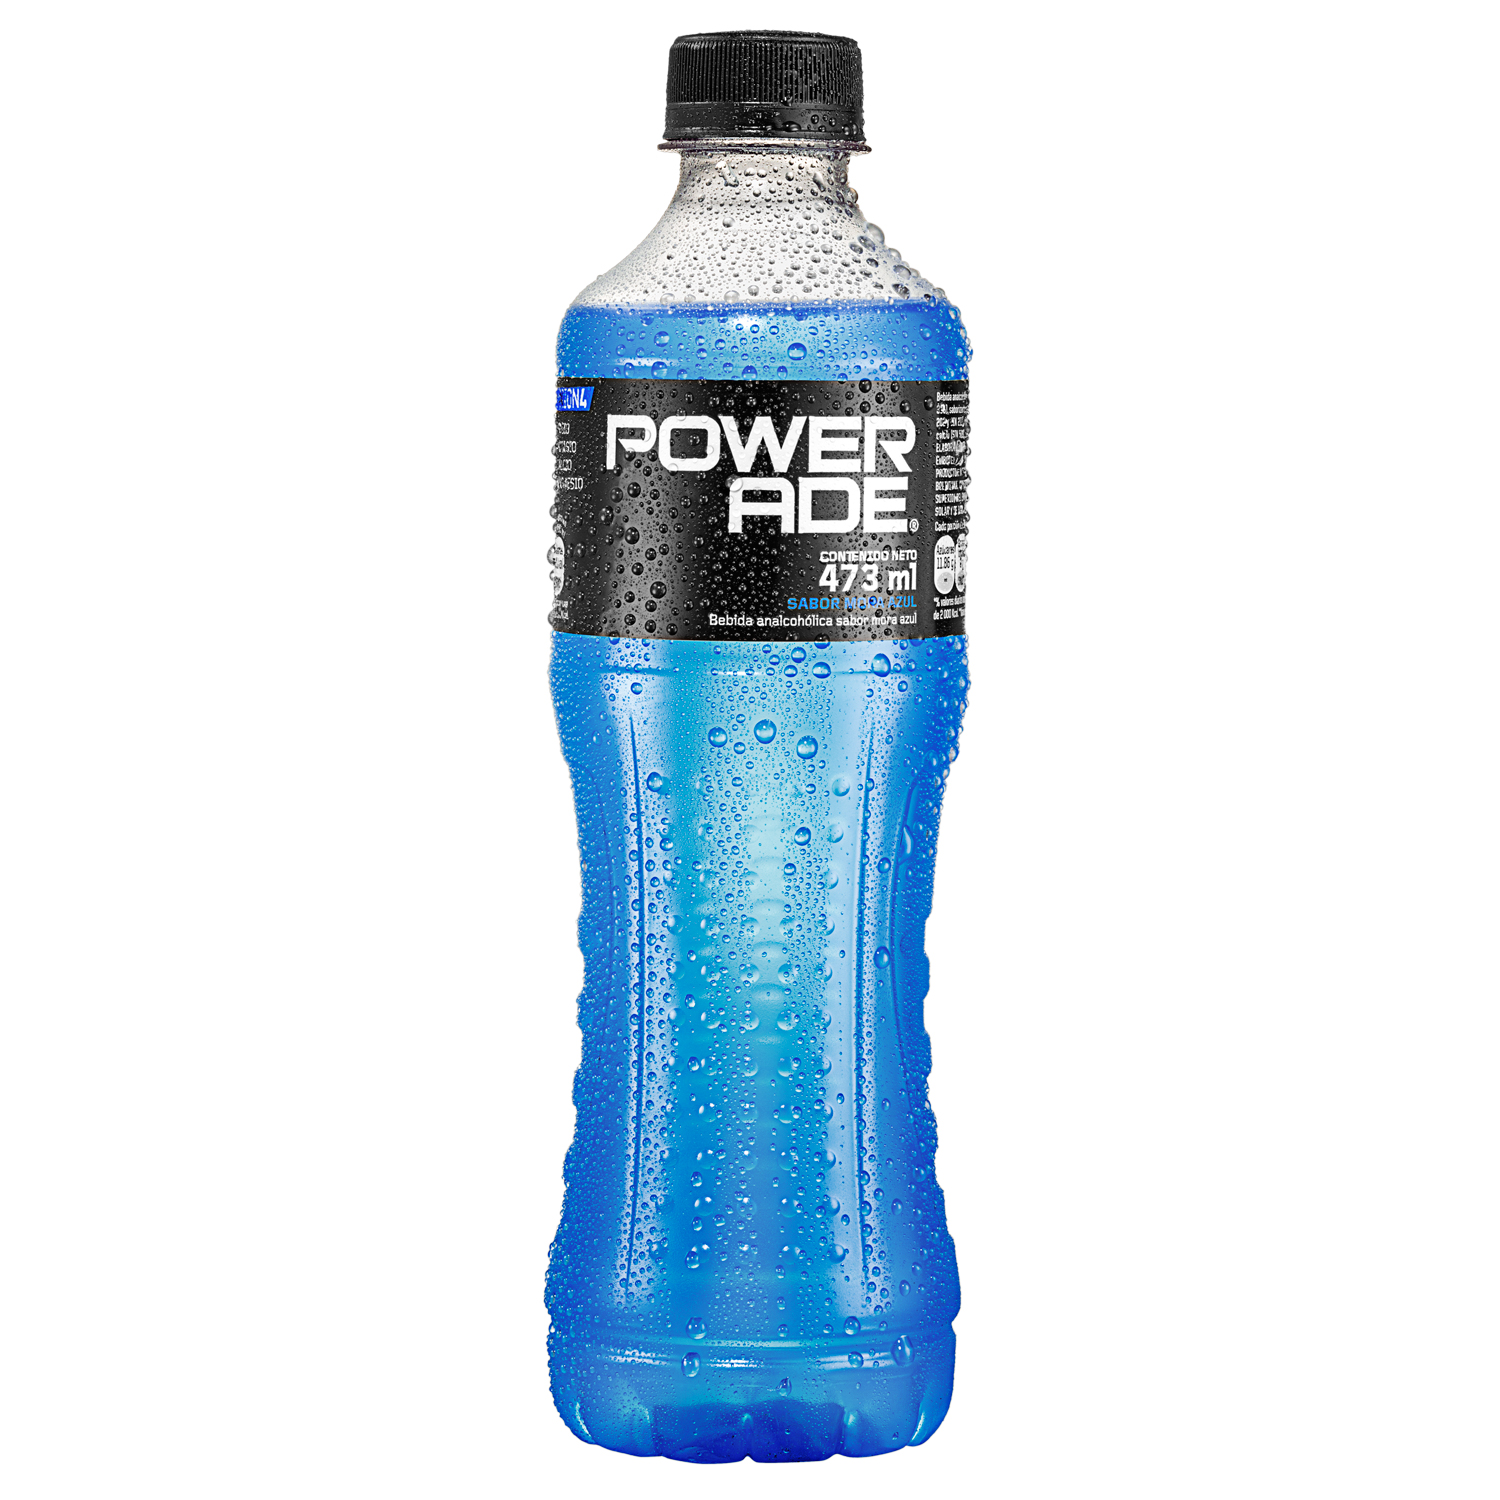 Botella de Powerade Mora Azul